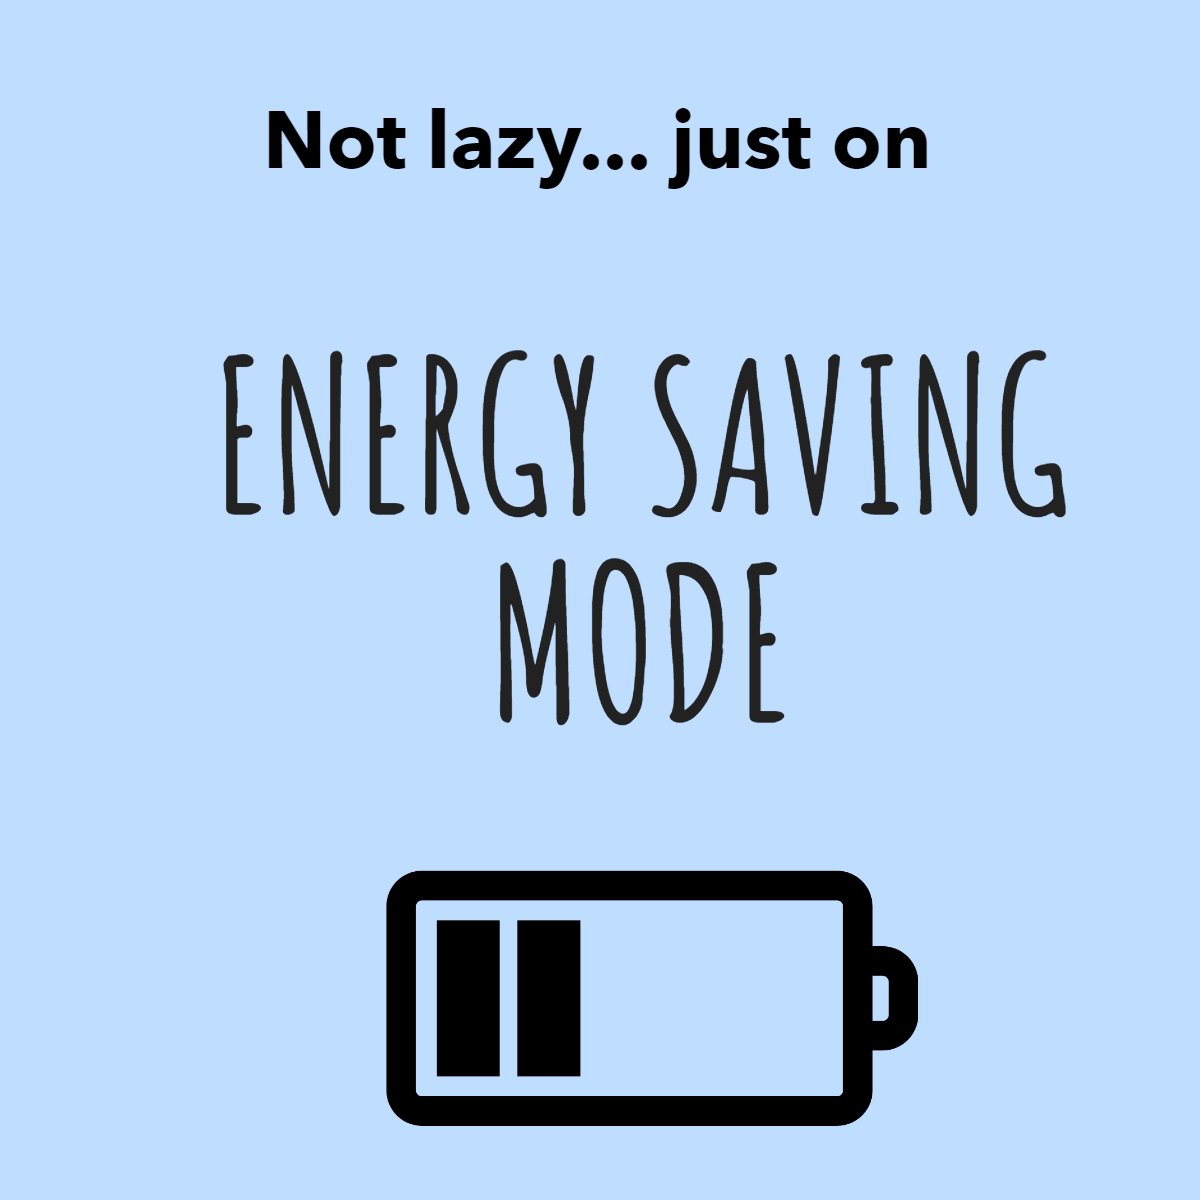 Not lazy... Just on saving mode 🔋😴

#energysaving    #energybites    #notlazy    #lazyness    #jokeoftheday
#schy #schyrealtor #Realestateinvesting #fresno #fresnorealestate #buyrealestate #californiarealestate #clovisrealestate